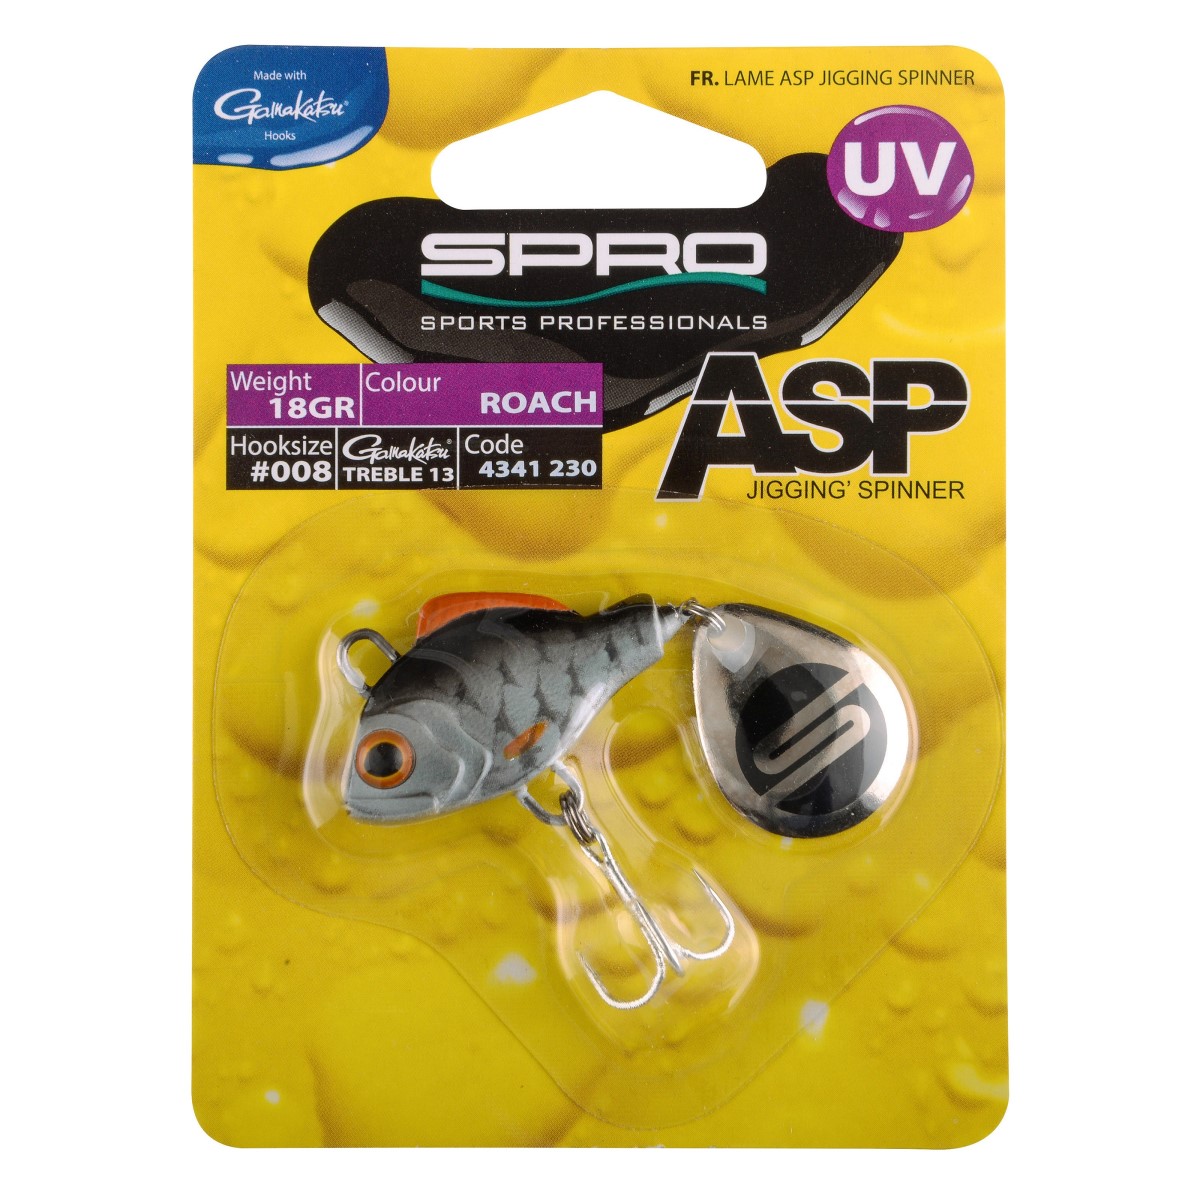 Спинер SPRO ASP Spinner UV Roach